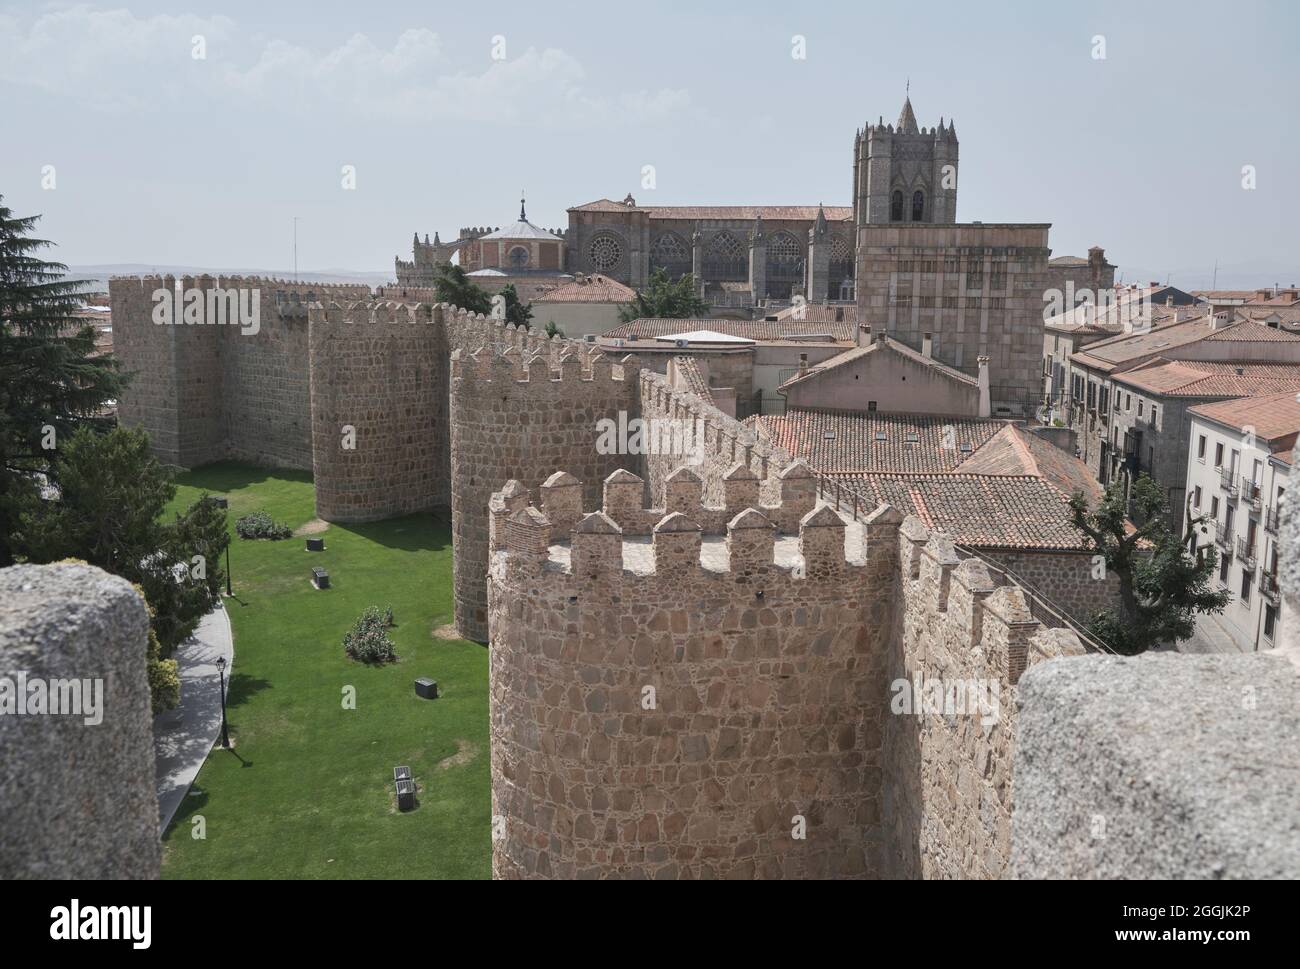 Ein Blick auf die steinerne Befestigungsmauer, die die alte rumänische Stadt Avila in Spanien umgibt Stockfoto